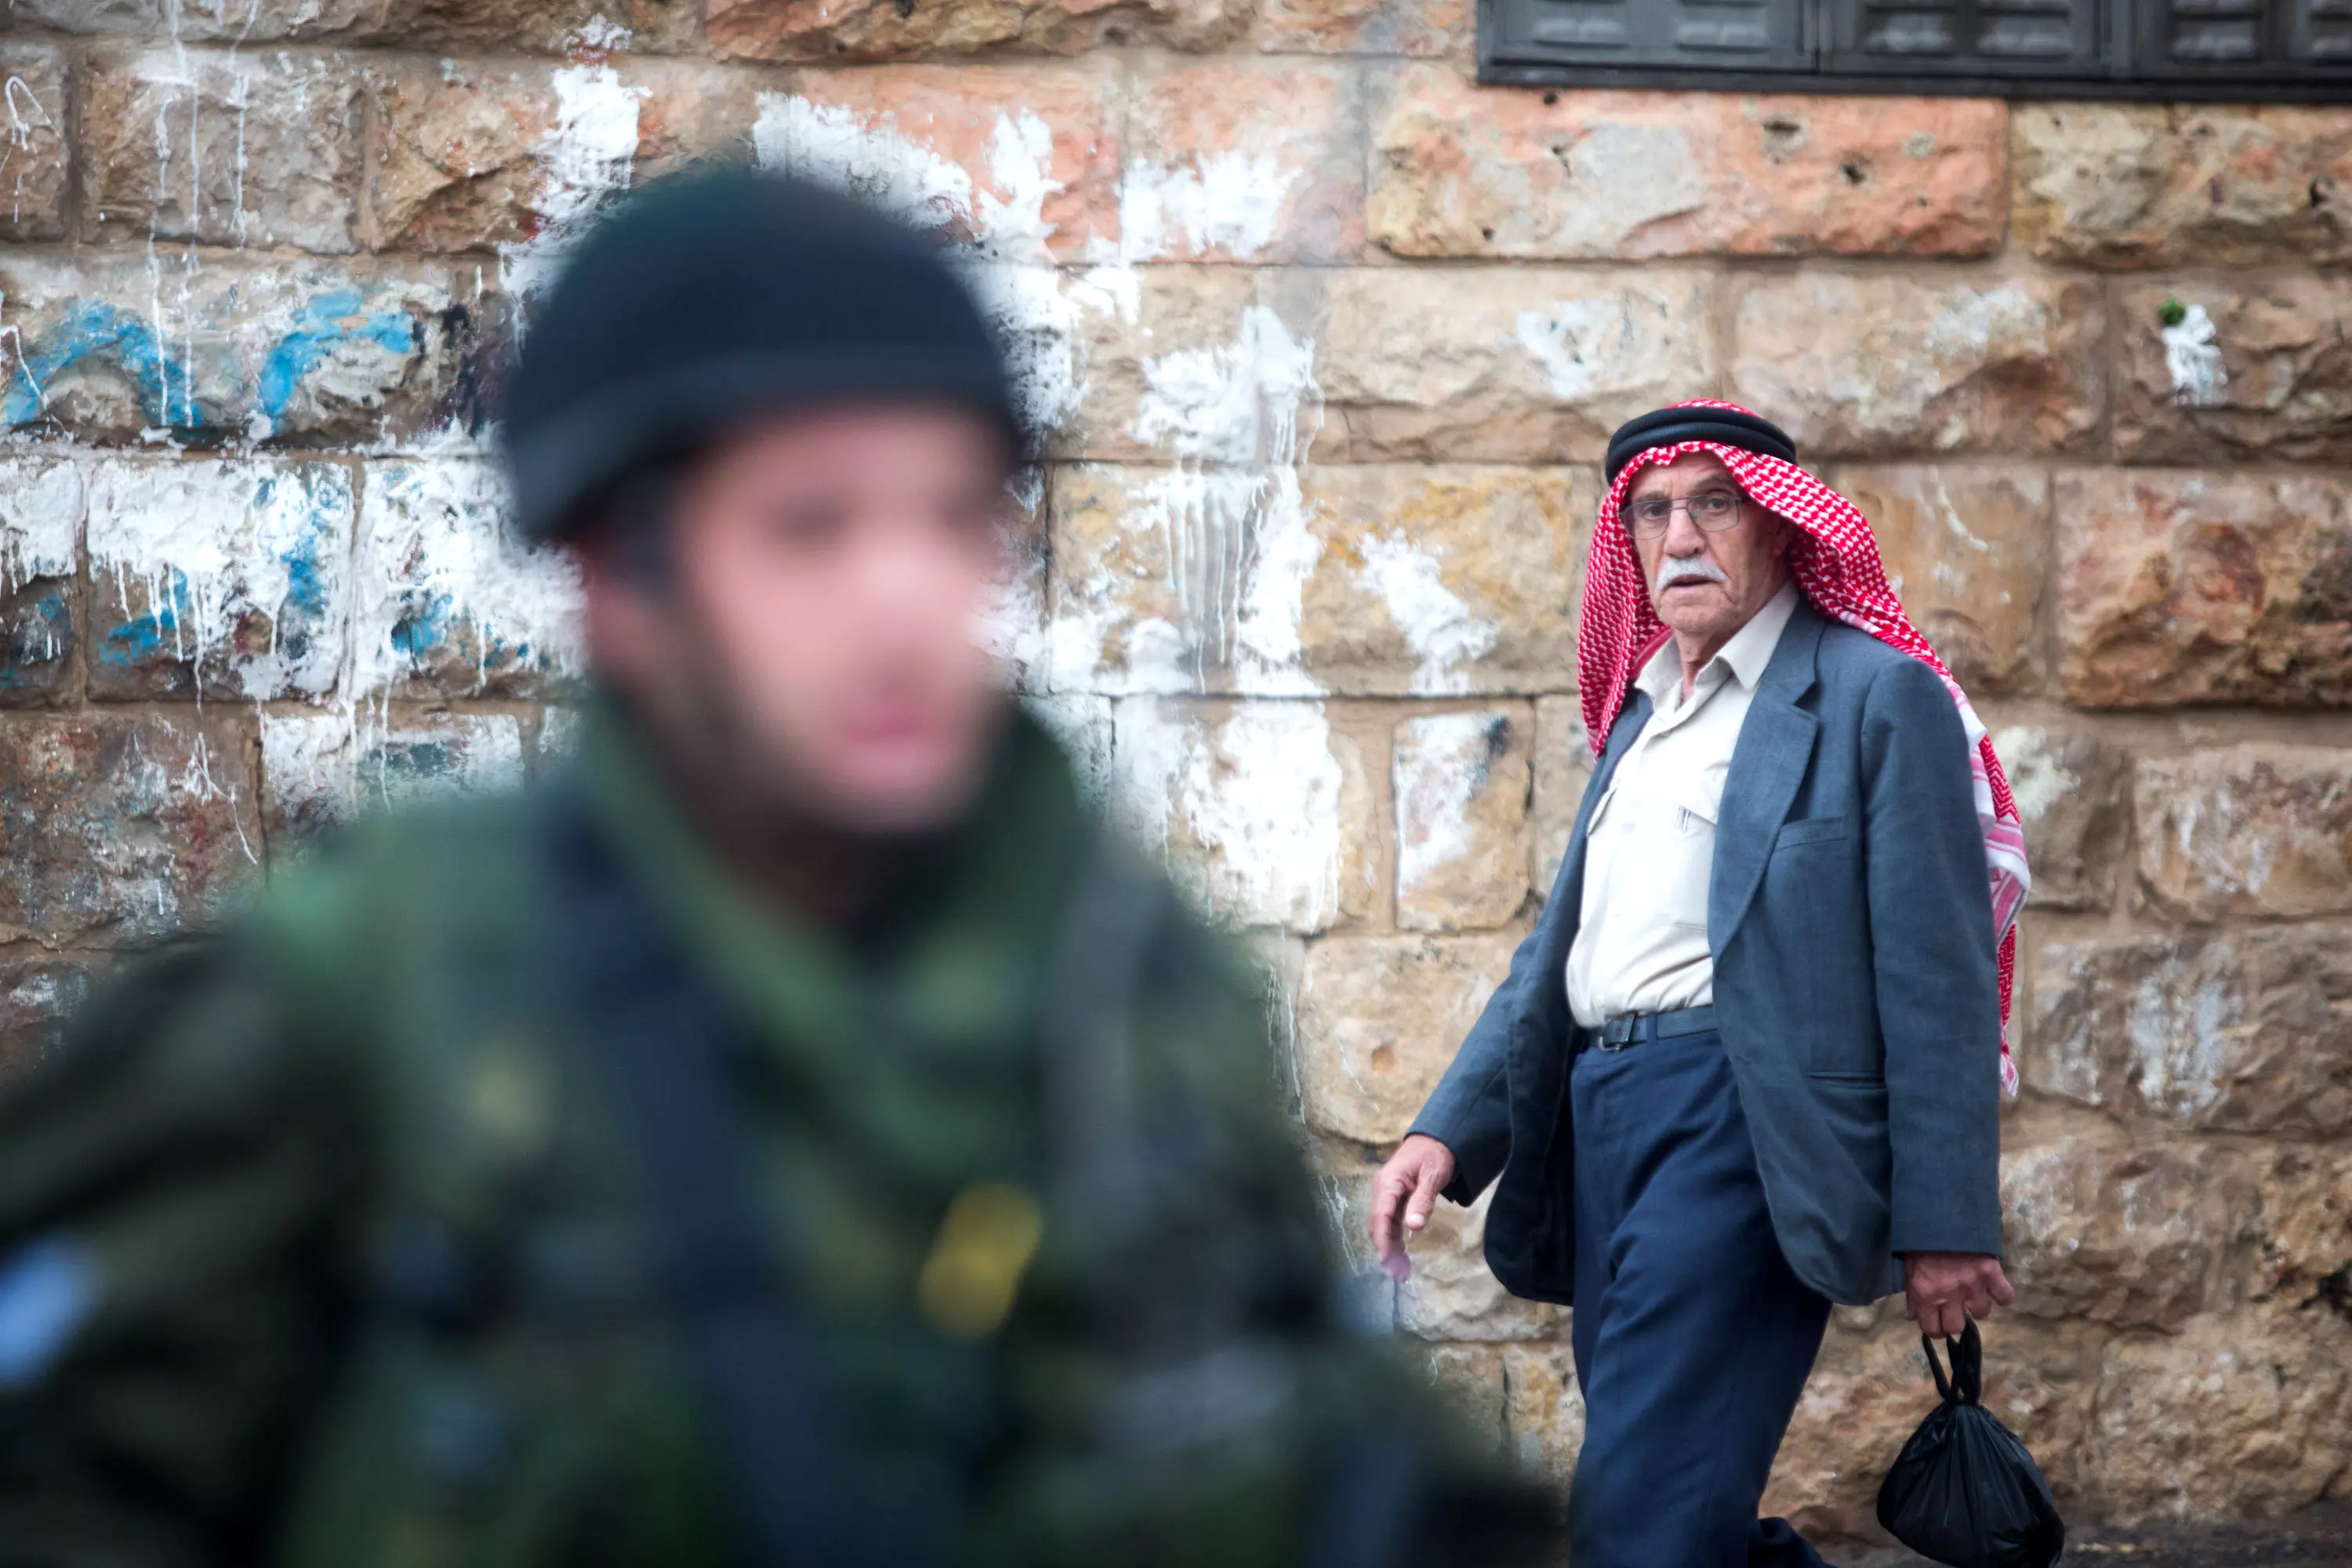 פלסטיני הולך ליד חייל צה"ל בעיר חברון